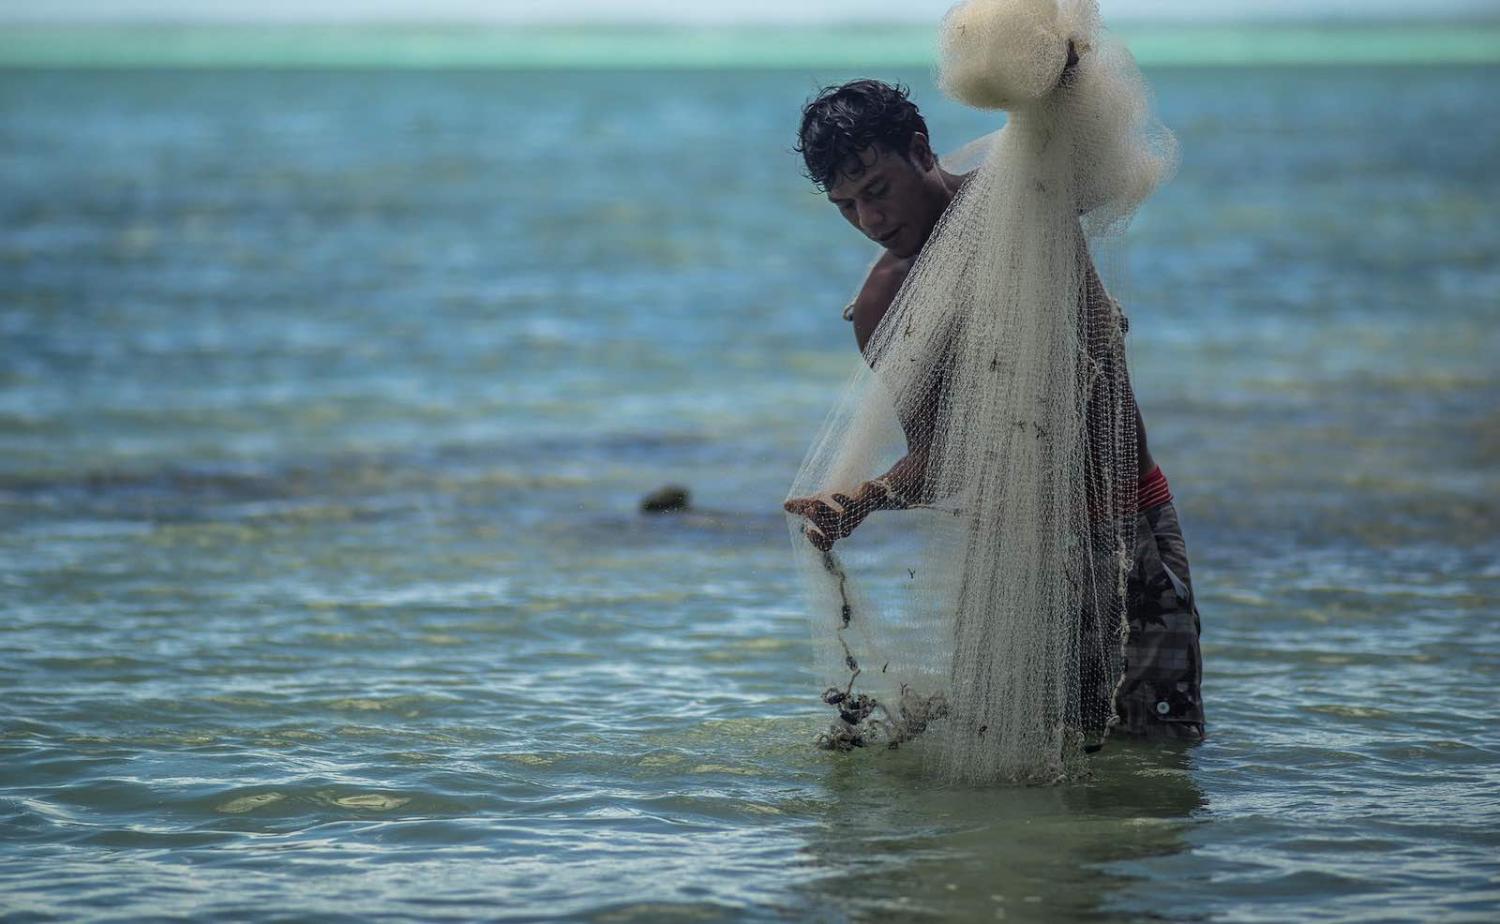 Fishing in Tarawa, Kiribati (Photo: Asian Development Bank/Flickr)